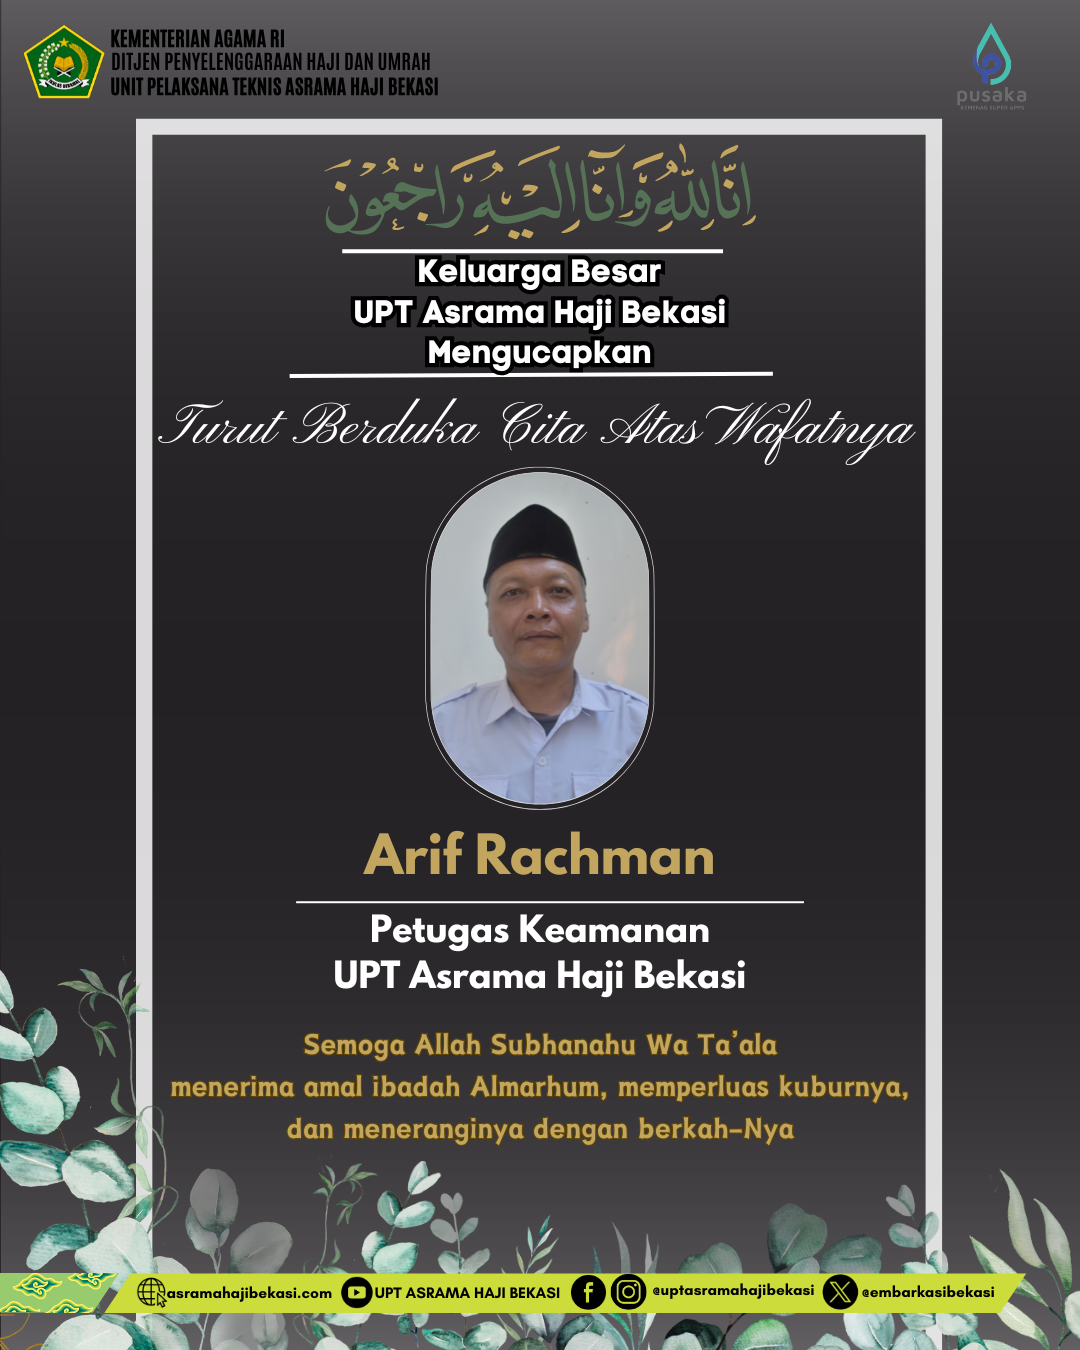 Turut Berduka Cita atas Wafatnya Pegawai UPT Asrama Haji Bekasi